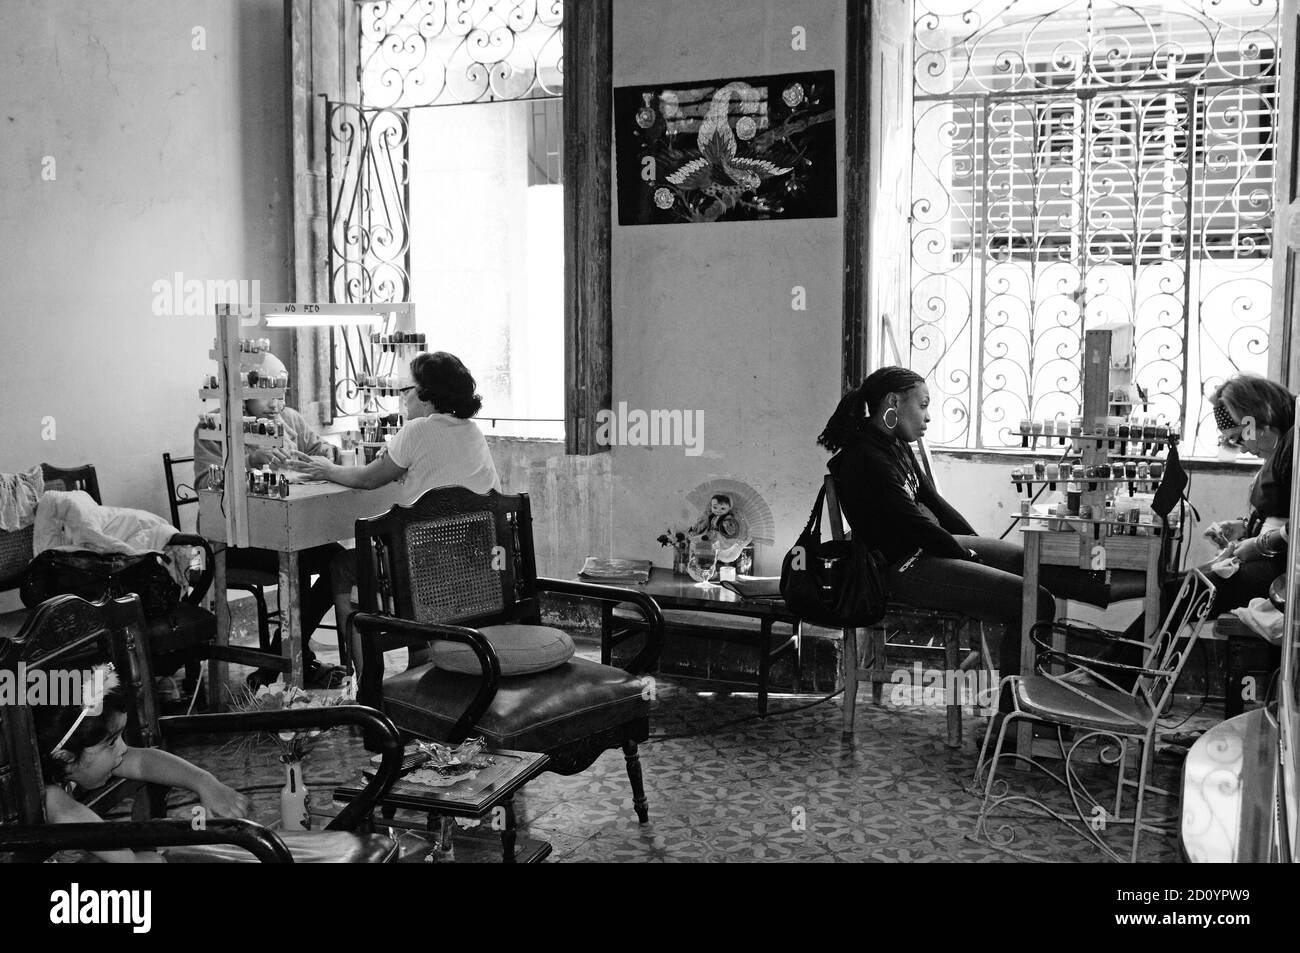 Bis 2015 sollten mindestens zwei Millionen Kubaner selbständig arbeiten. Beauty-Salon und Nail-Studio in Havanna in einer Wohnung eingerichtet. Beauty Stock Photo